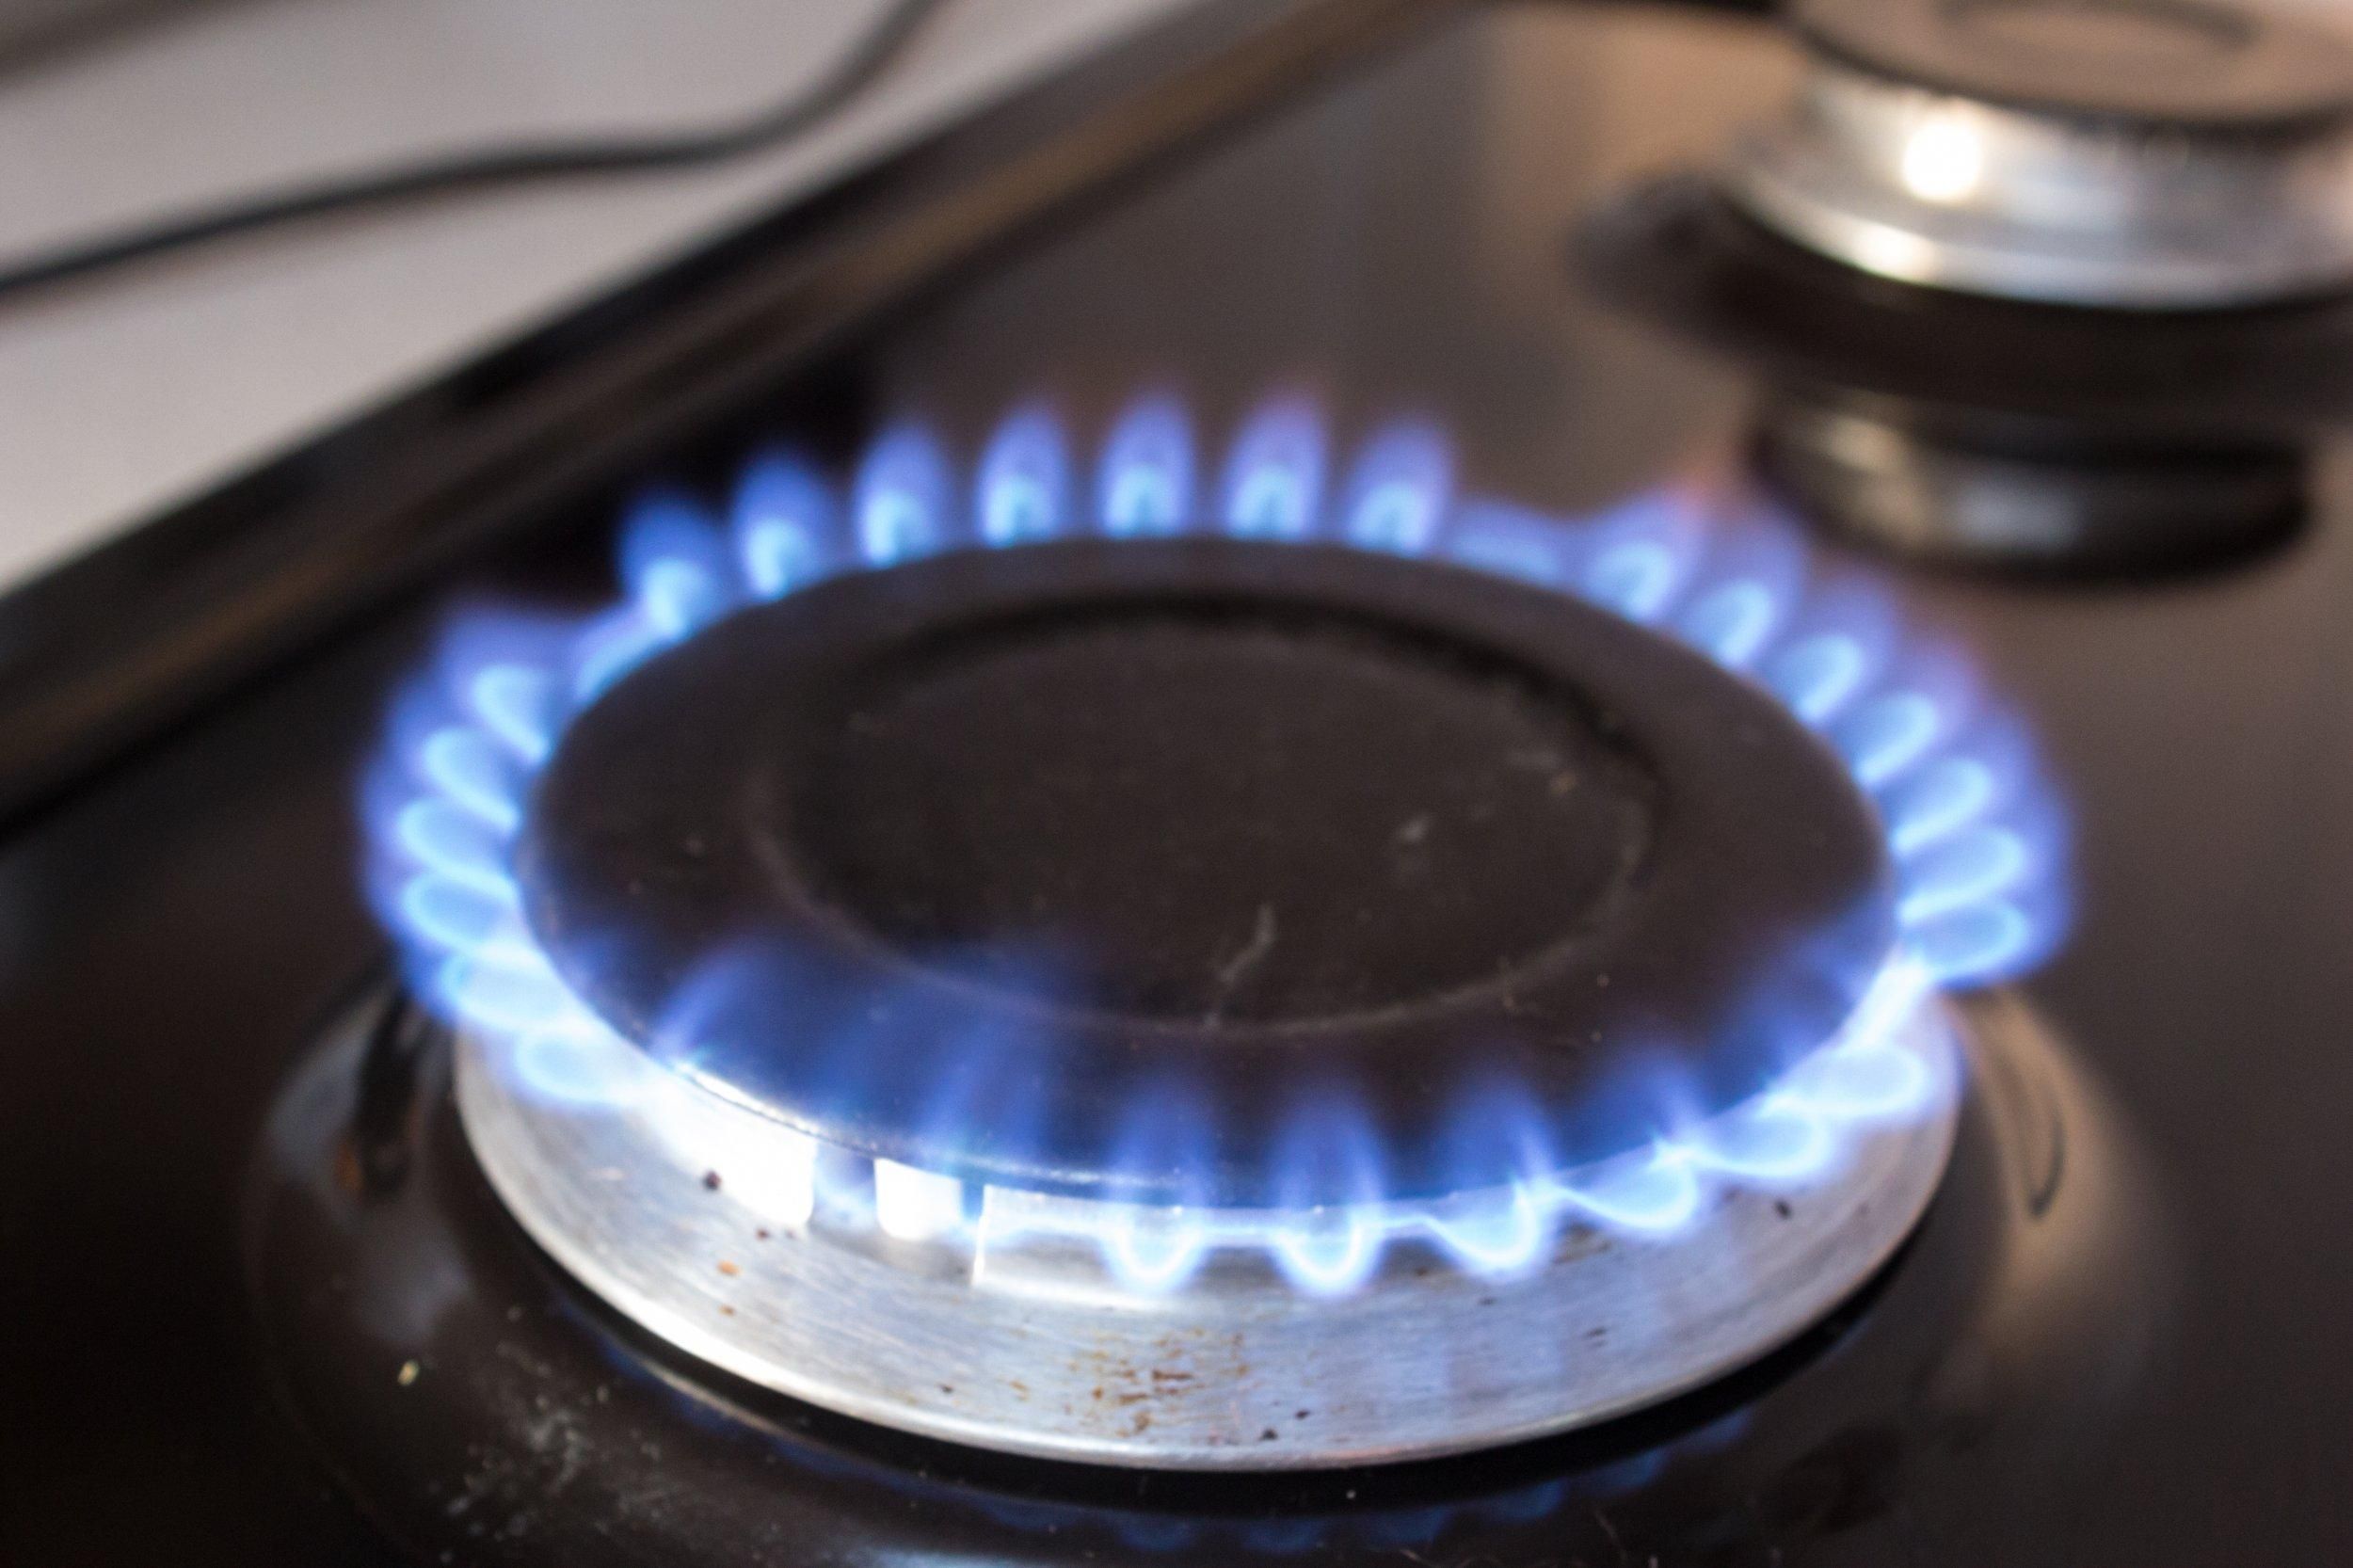 Сменить поставщика газа станет проще: новые правила НКРЭКУ